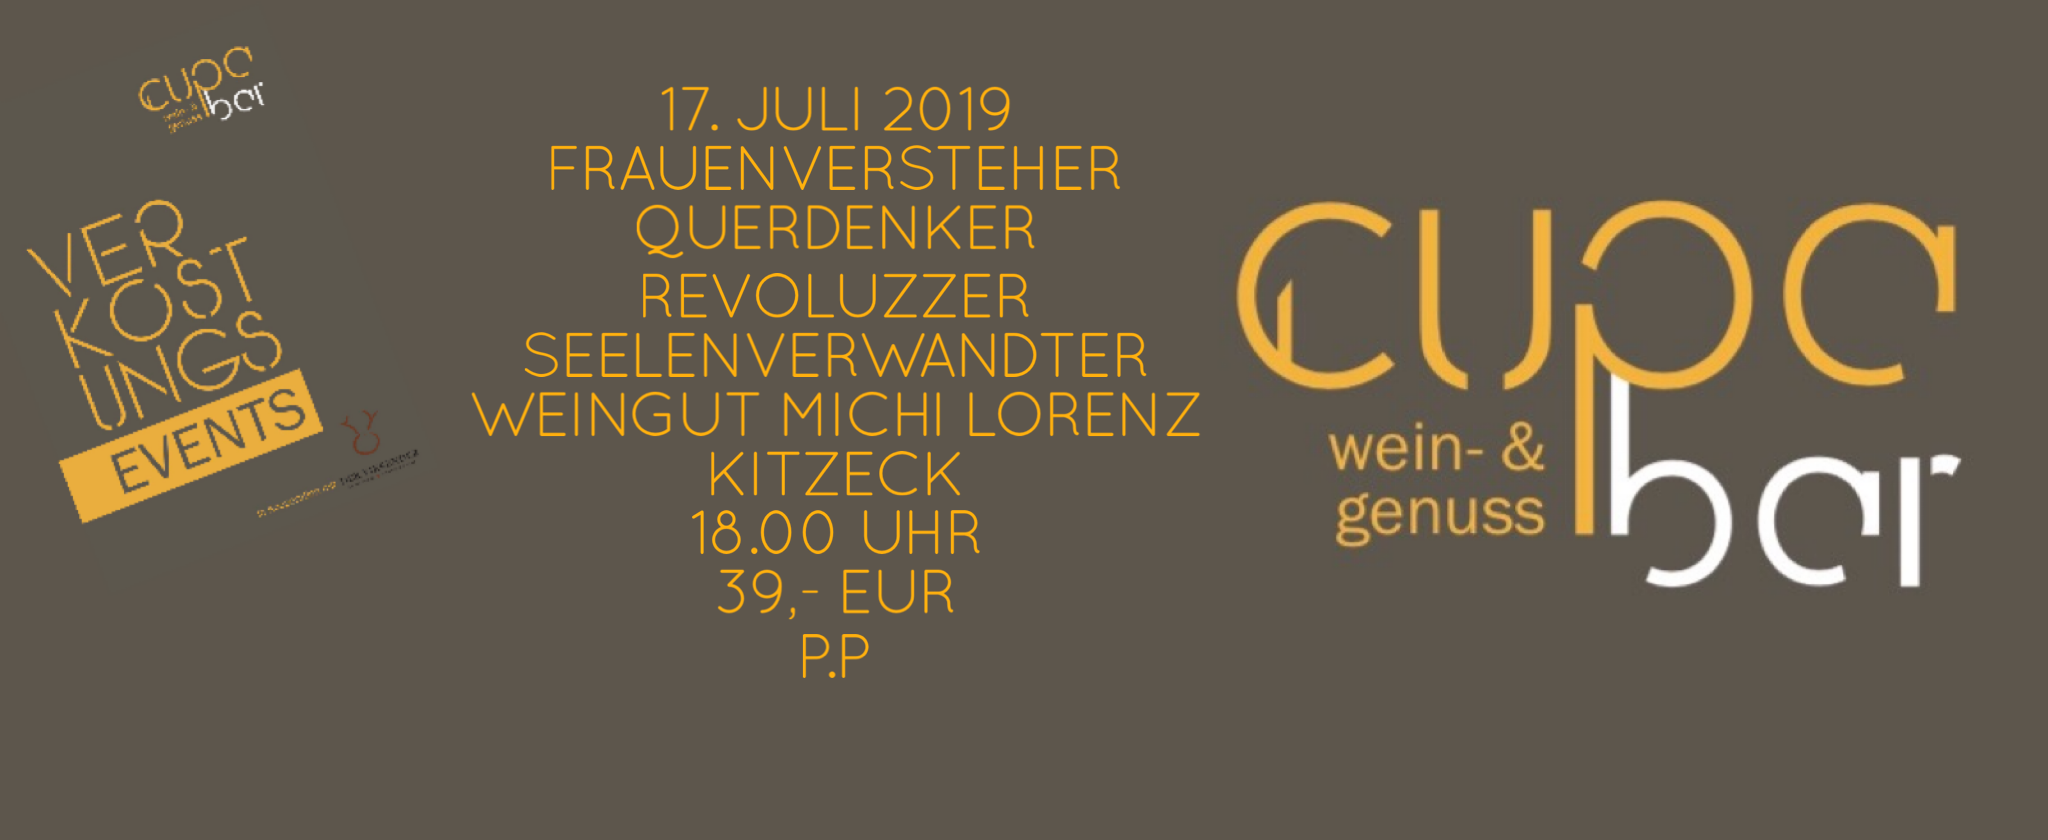 Verkostungs Events . Cupa Bar . Michi Lorenz Wein- Genuss- und Schlafgut . Kitzeck . 17. Juli 2019